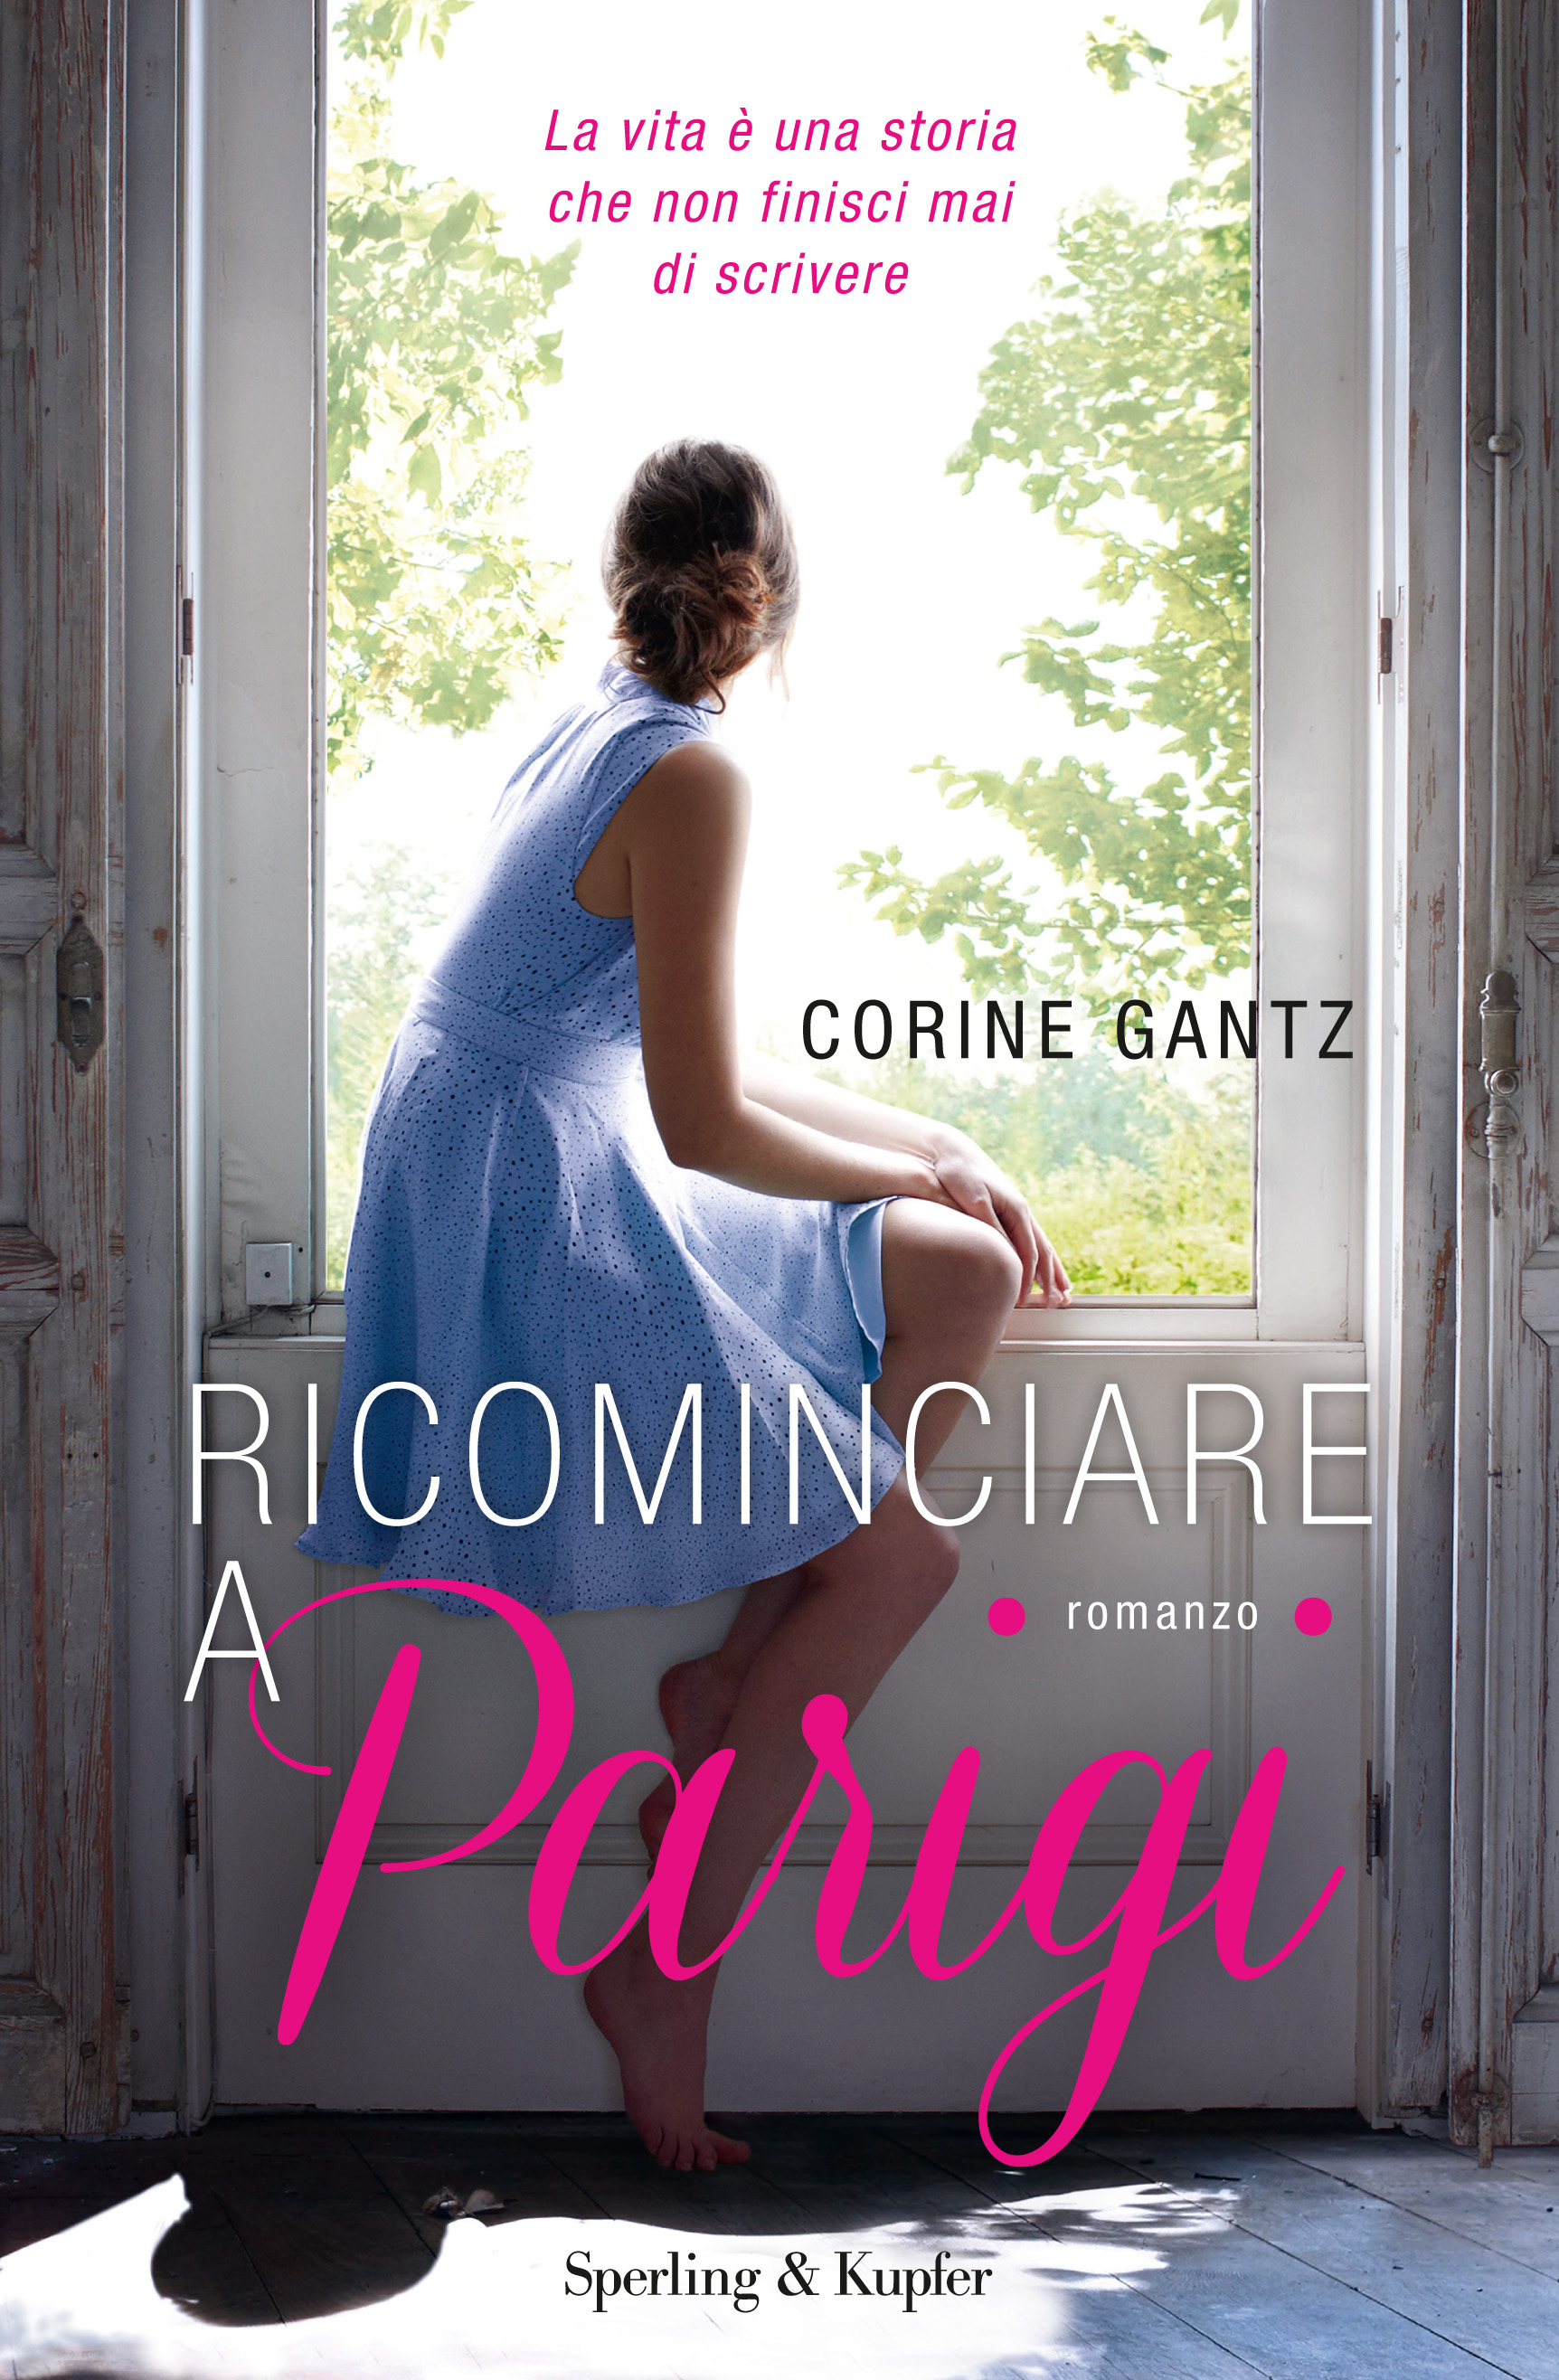 Ricominciare a Parigi: l’Italia e l’italiano con Corine Gantz